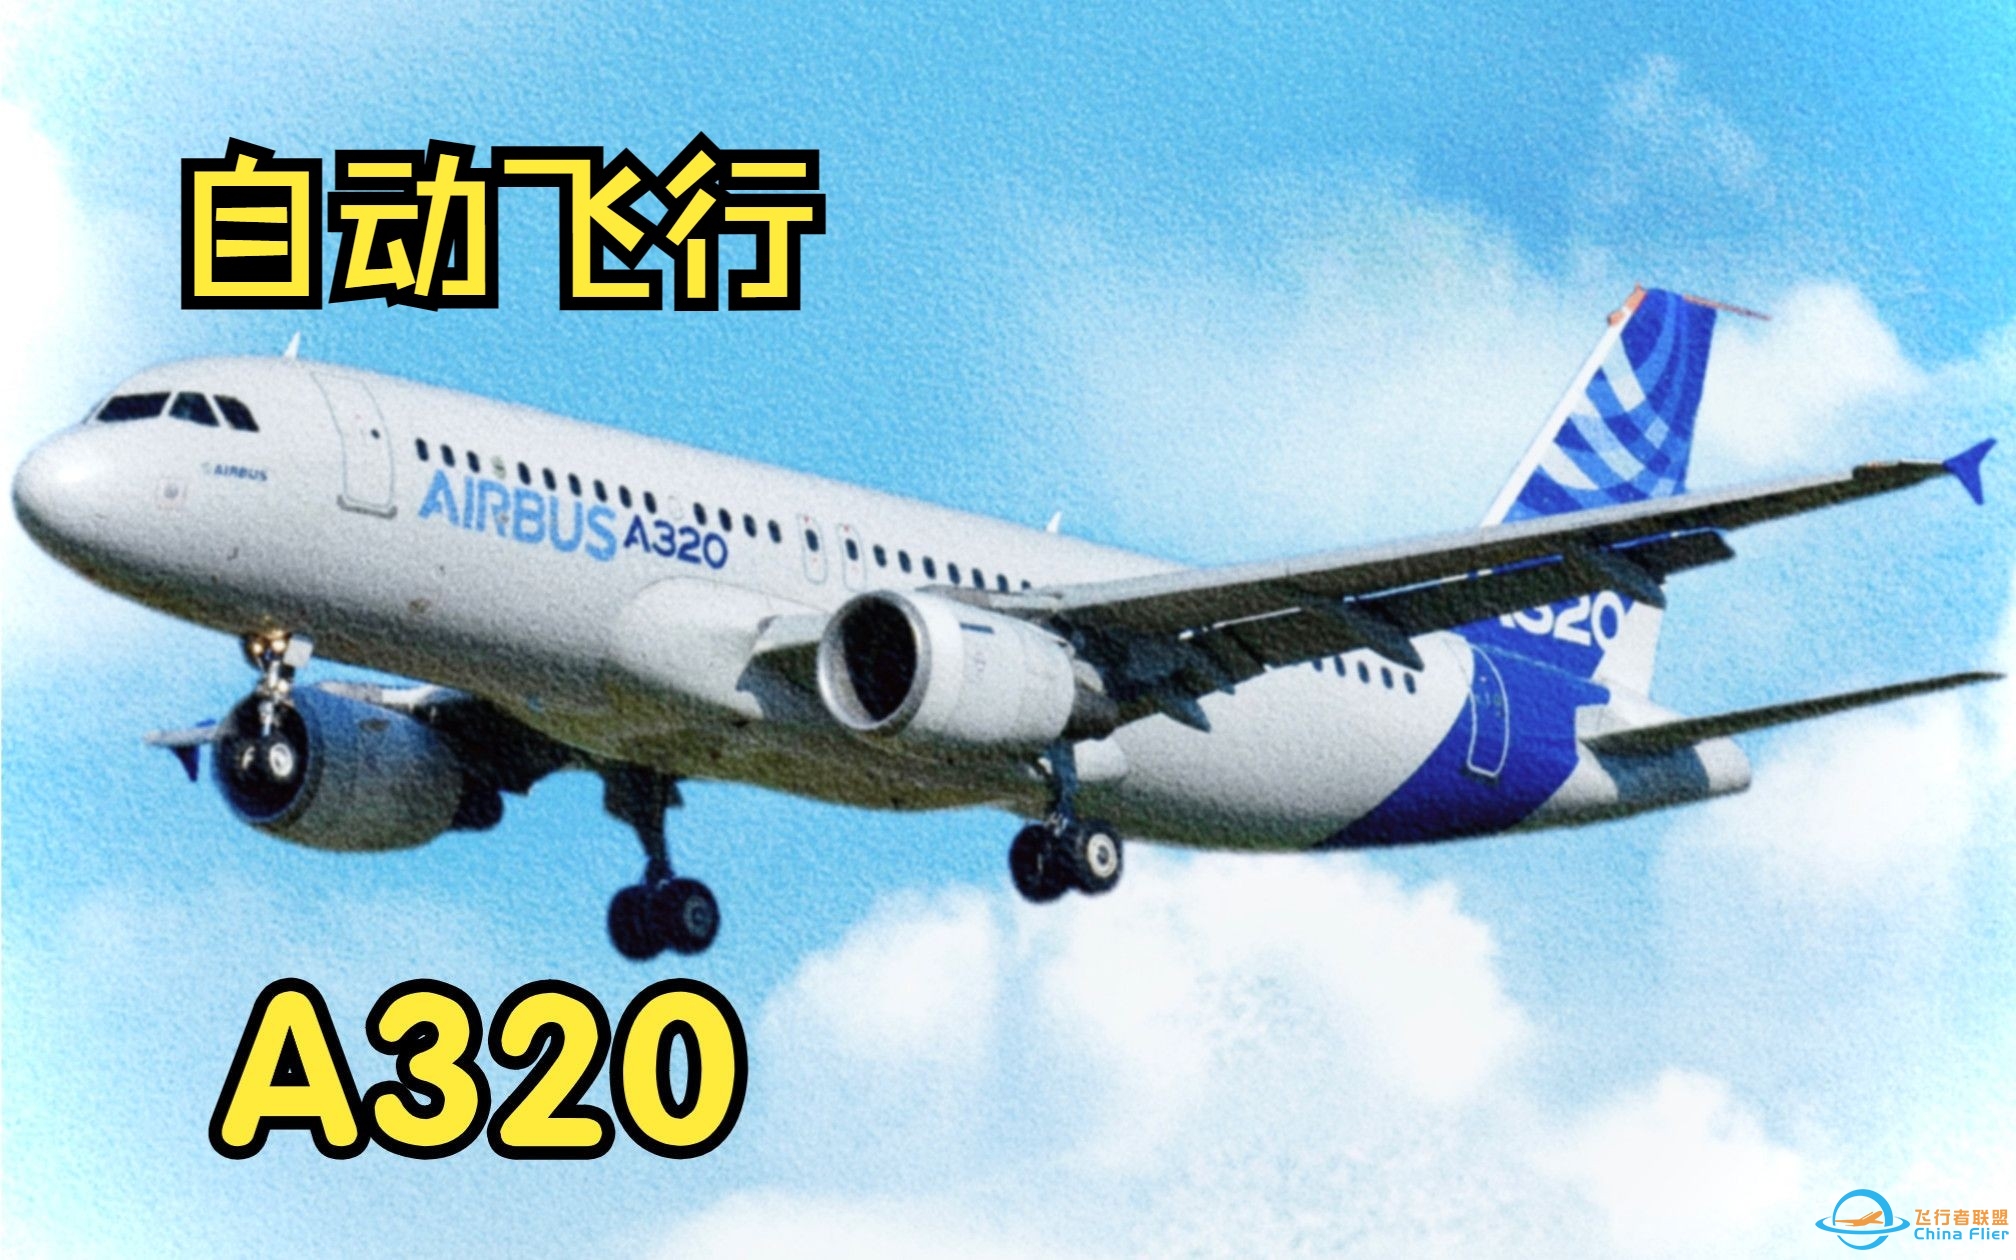 【飞行模拟从零学习空客A320】8.自动飞行系统-3580 